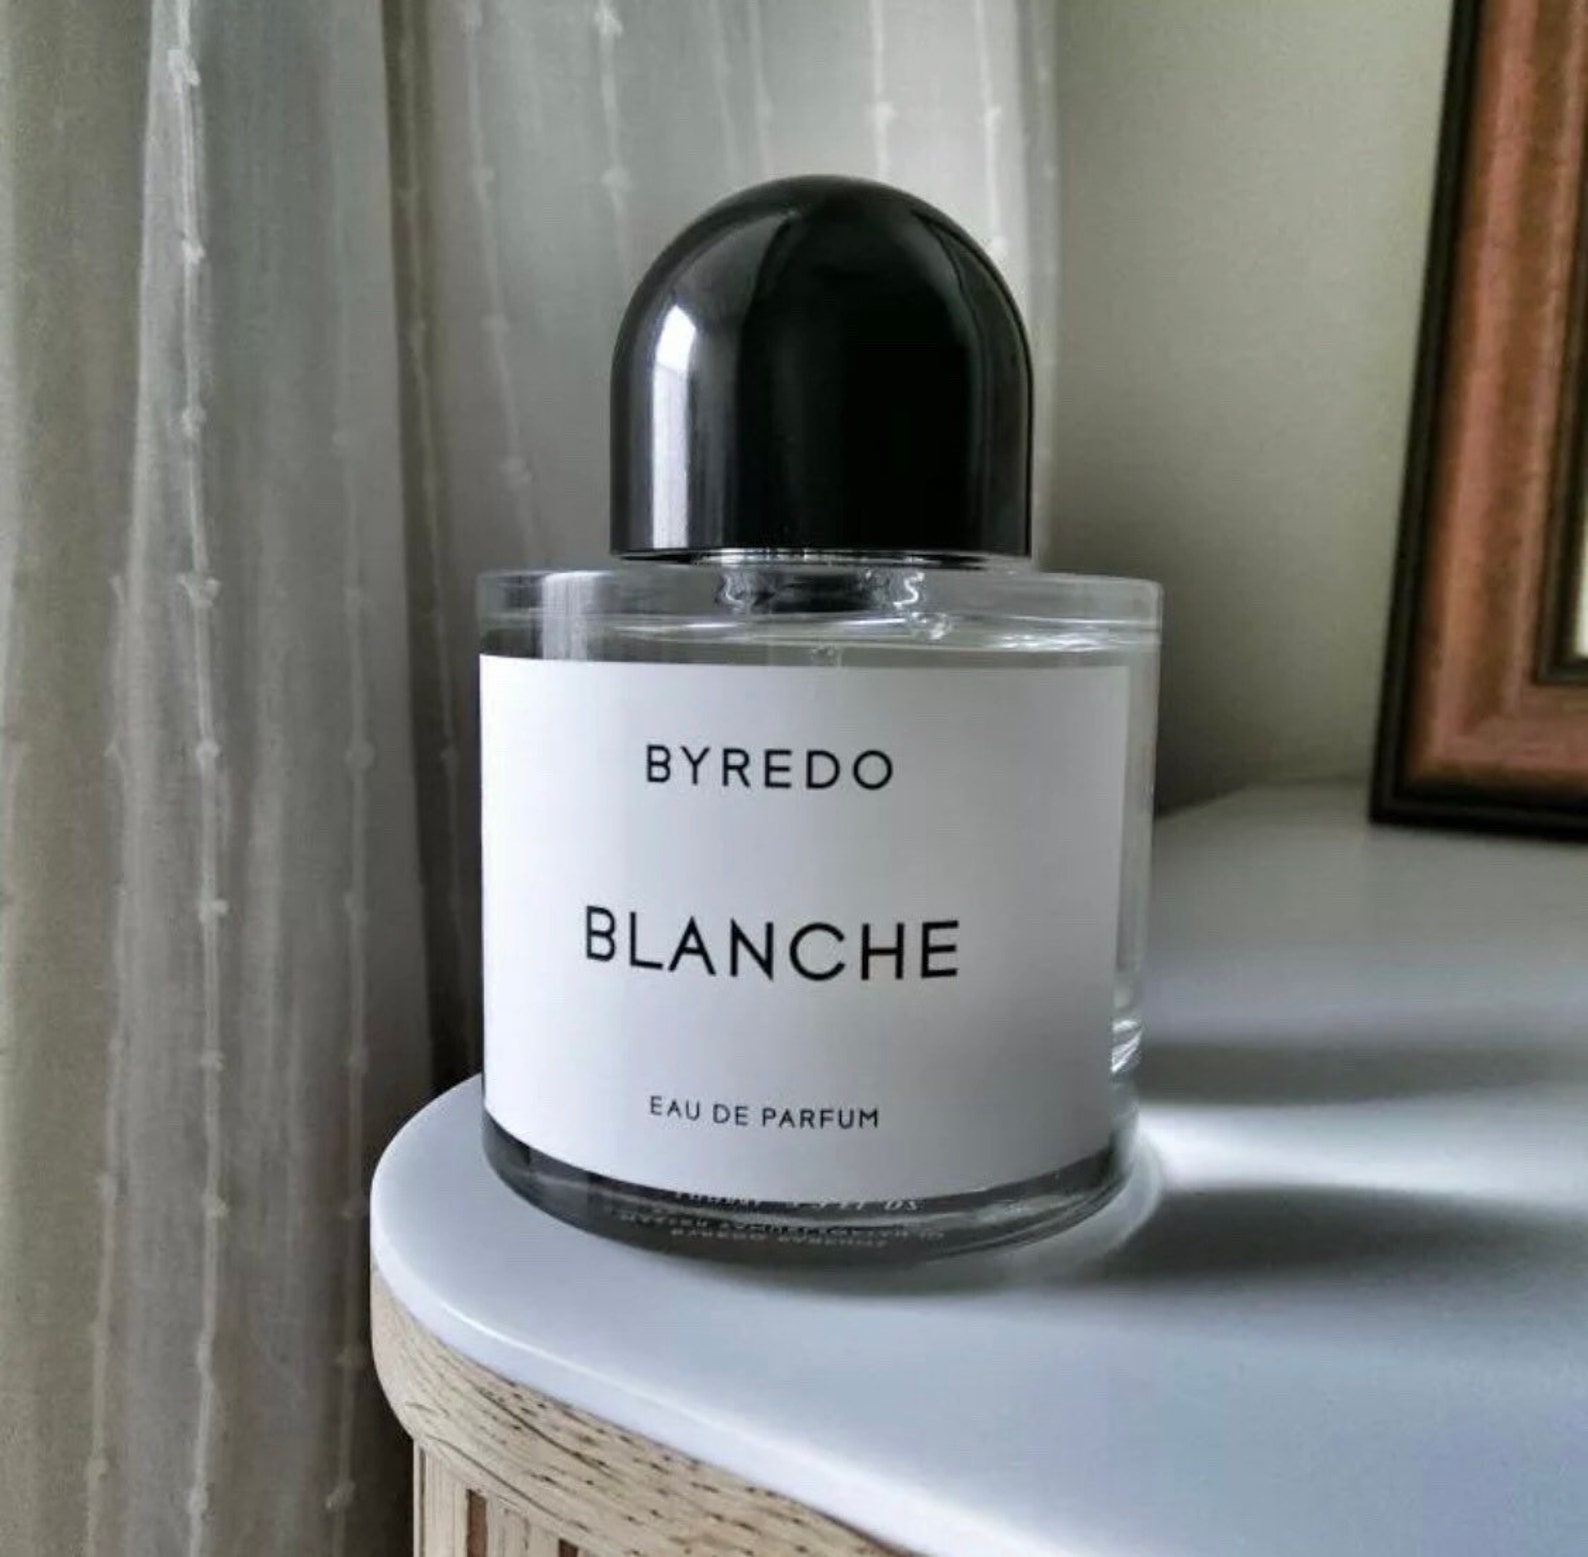 Byredo Blanche 100 ml 3.4 o.z. parfum parfum | Etsy